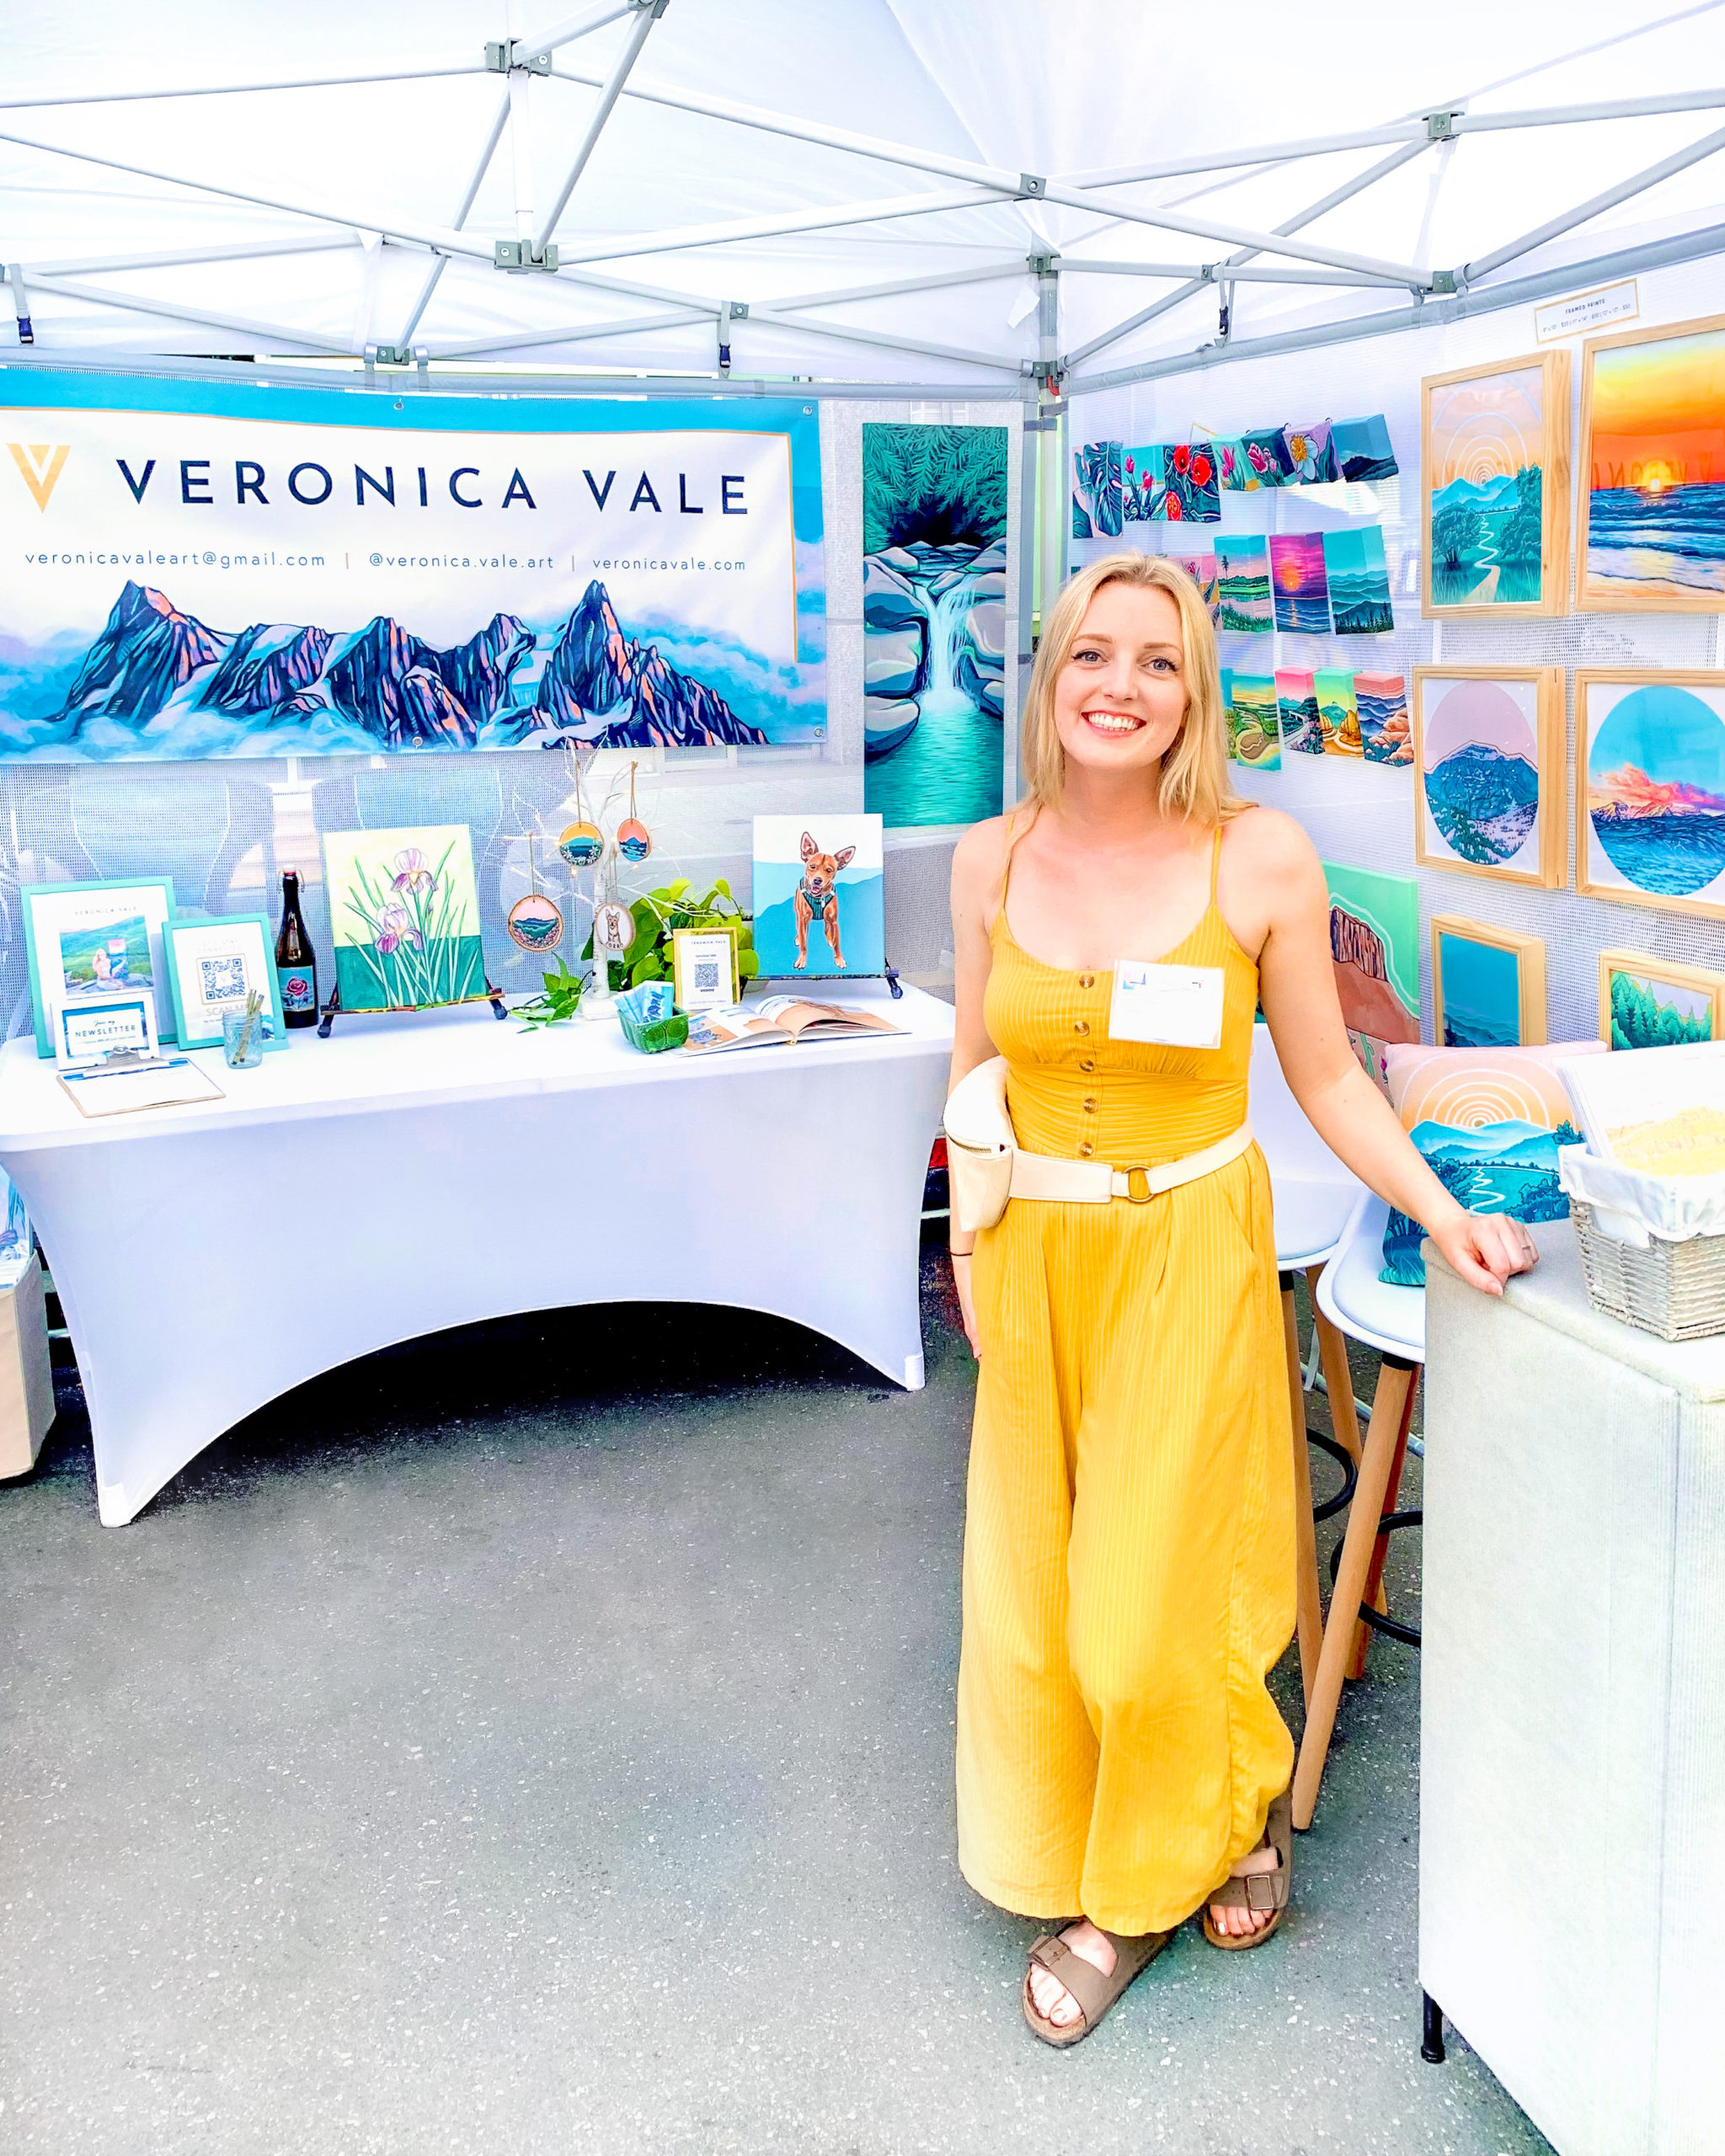 Veronica Vale at the Artsplosure Fair